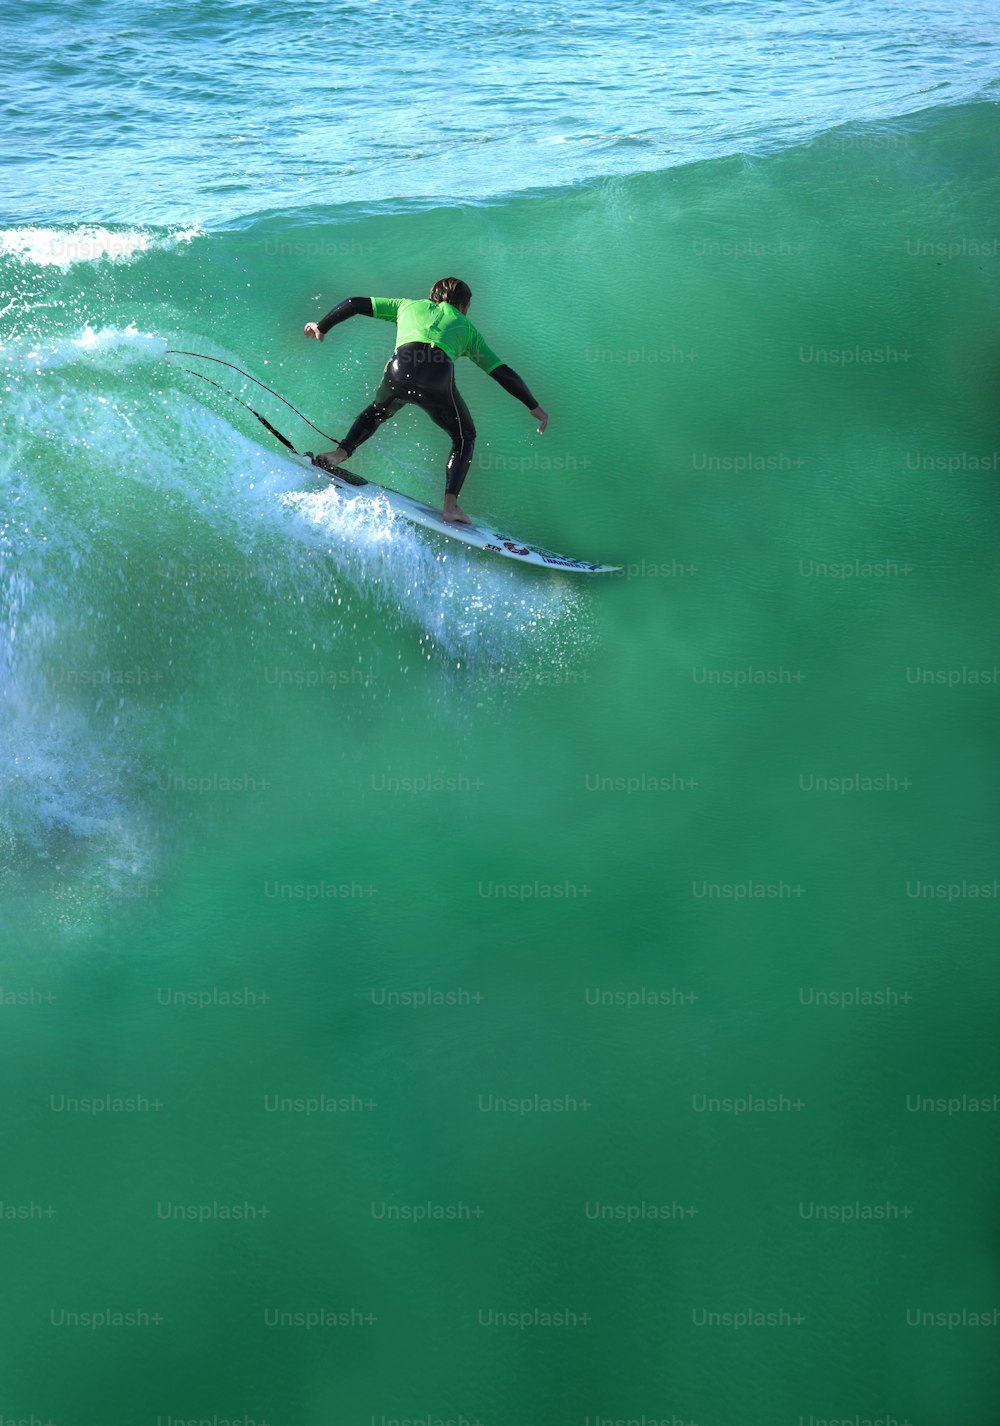 Un surfista cogiendo una ola